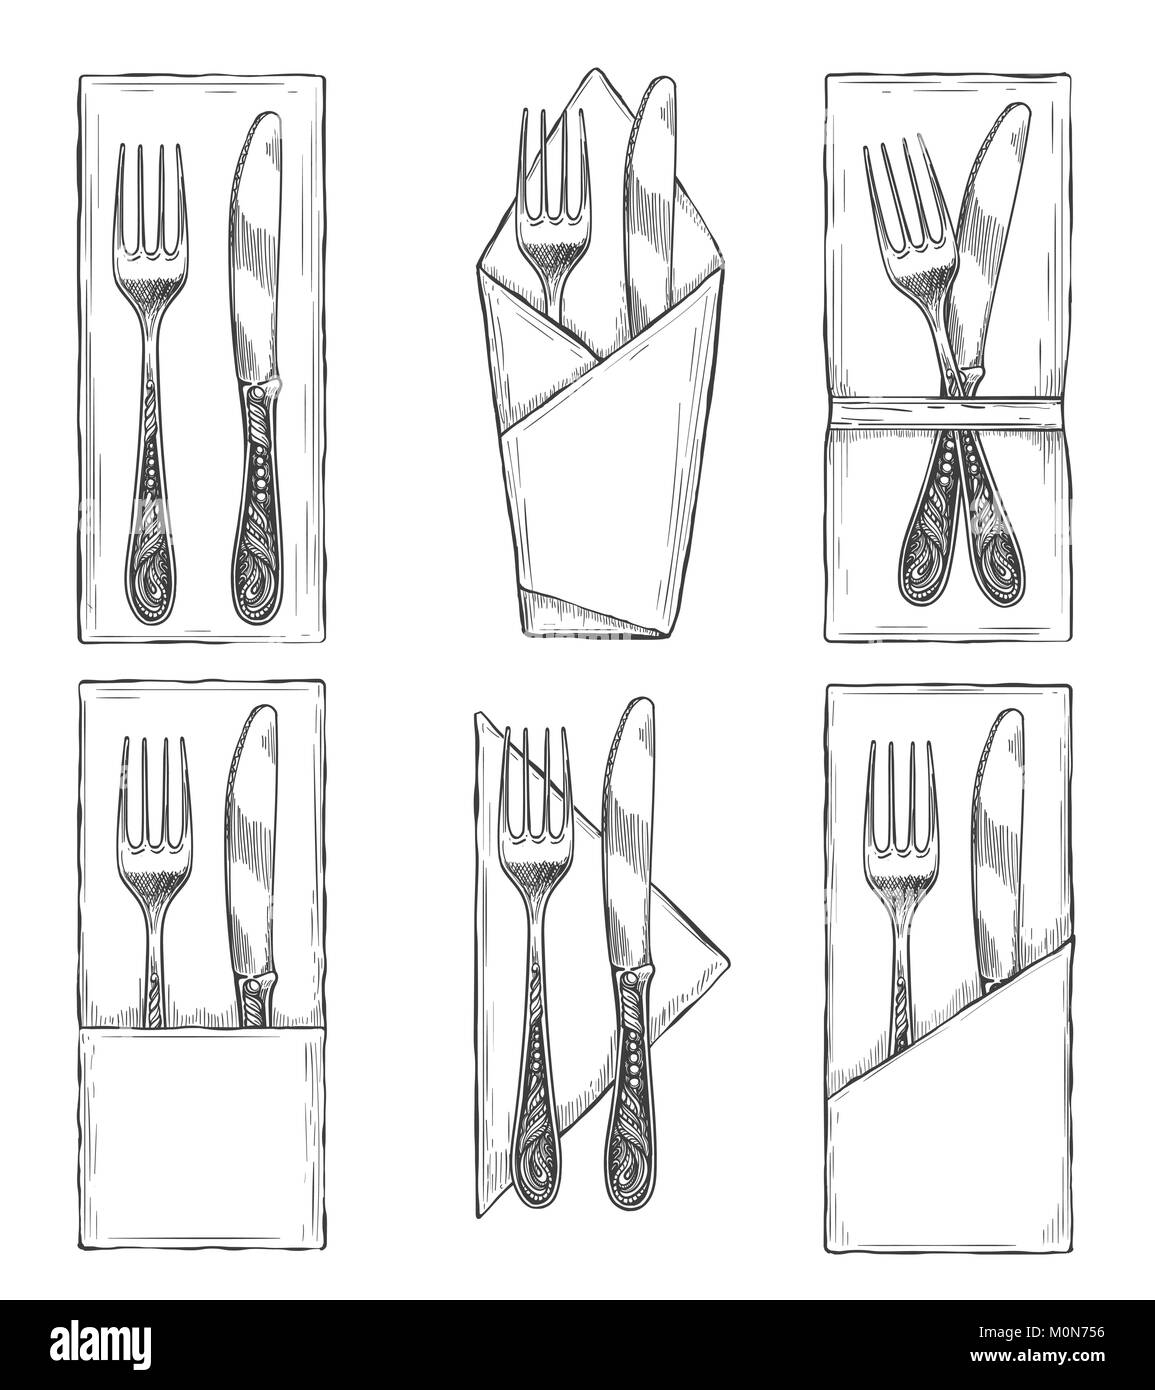 Besteck auf die Serviette skizzieren. Gabel, Messer und Löffel auf Servietten-set Zeichnung, Tisch Etikette Vector Illustration Stock Vektor